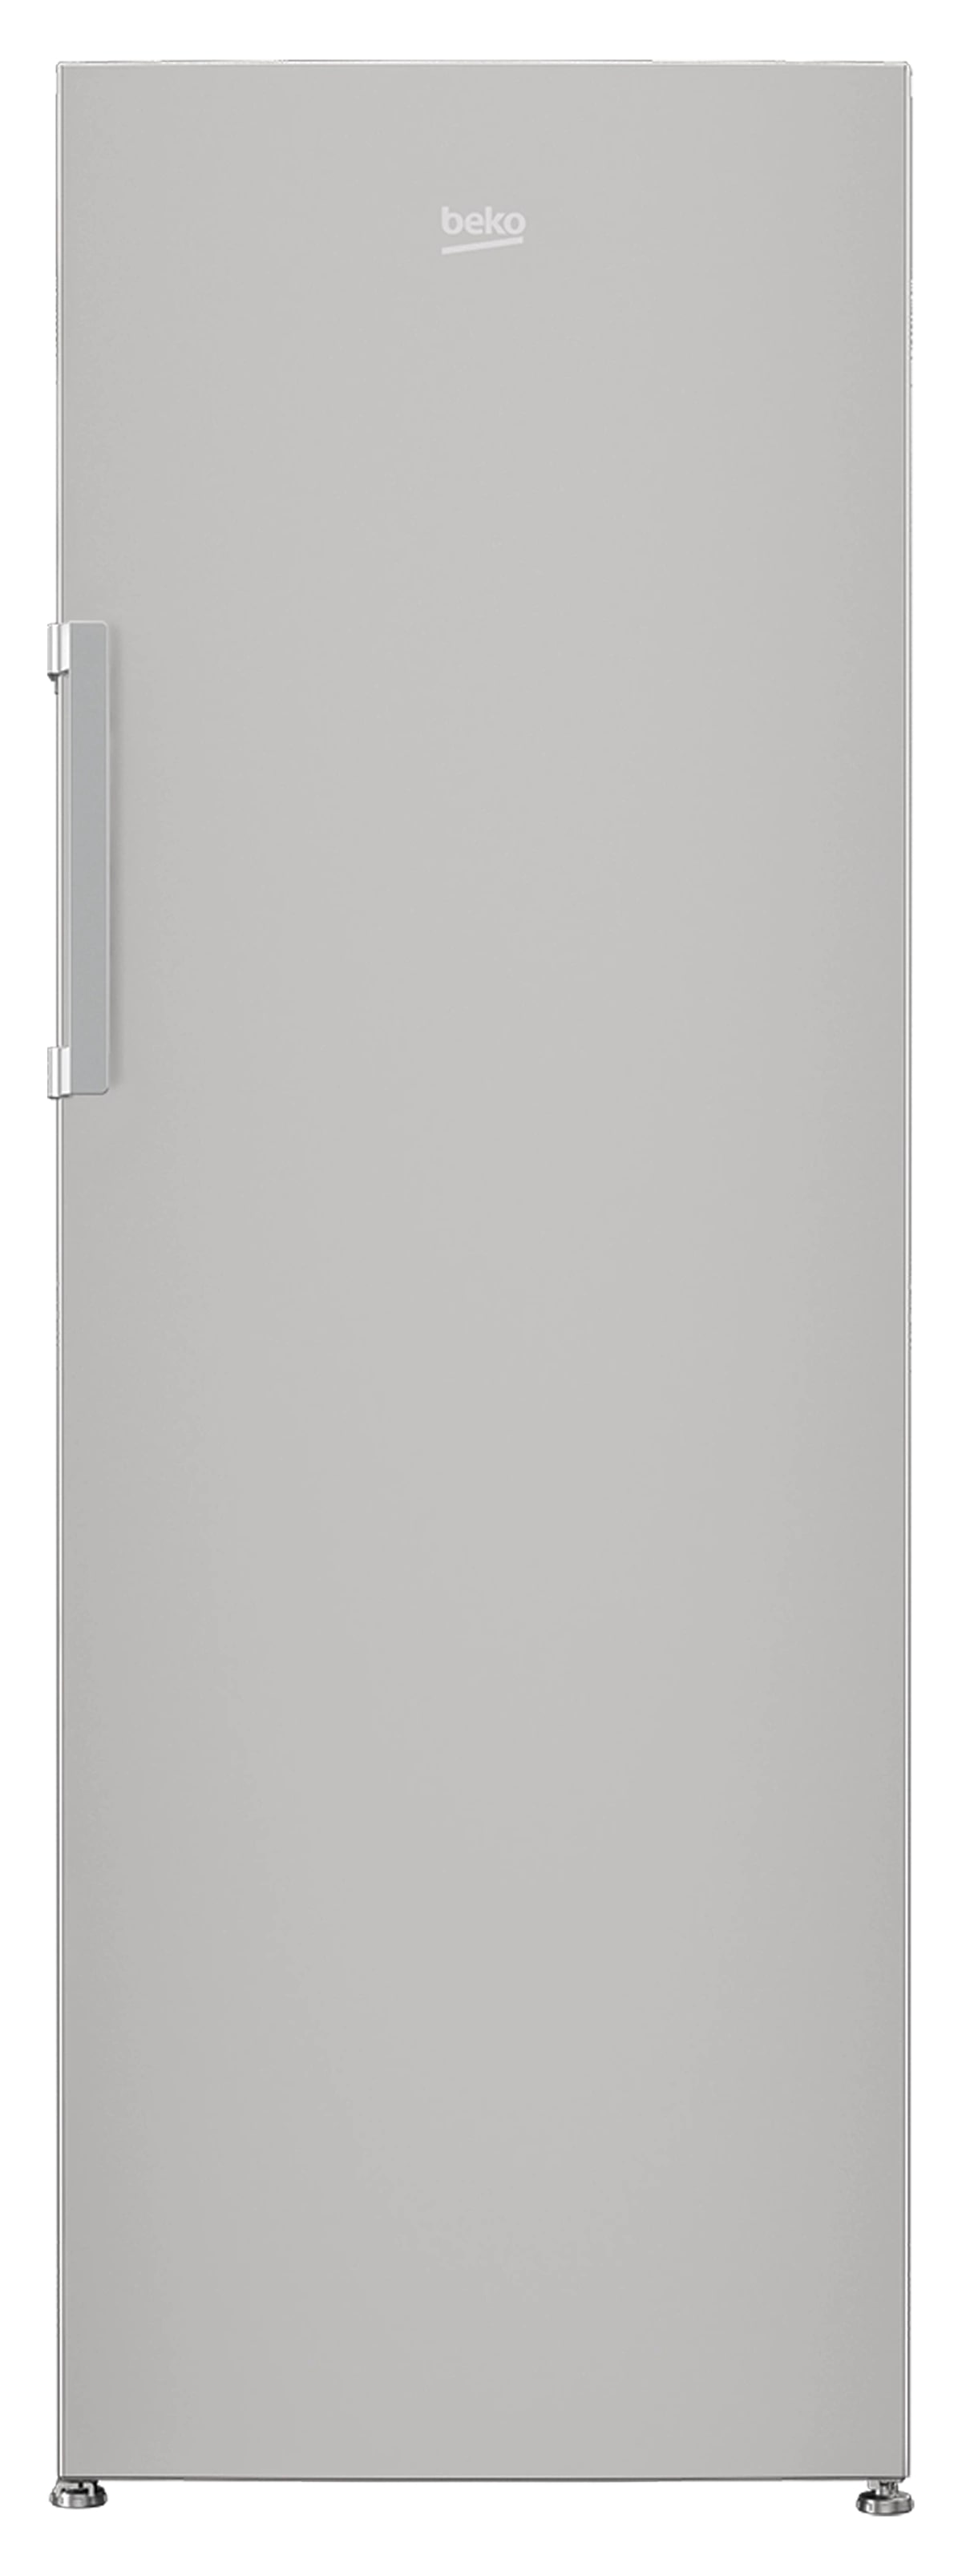 Beko Upright Freezer 320 L 7 Drawer A+ - Silver